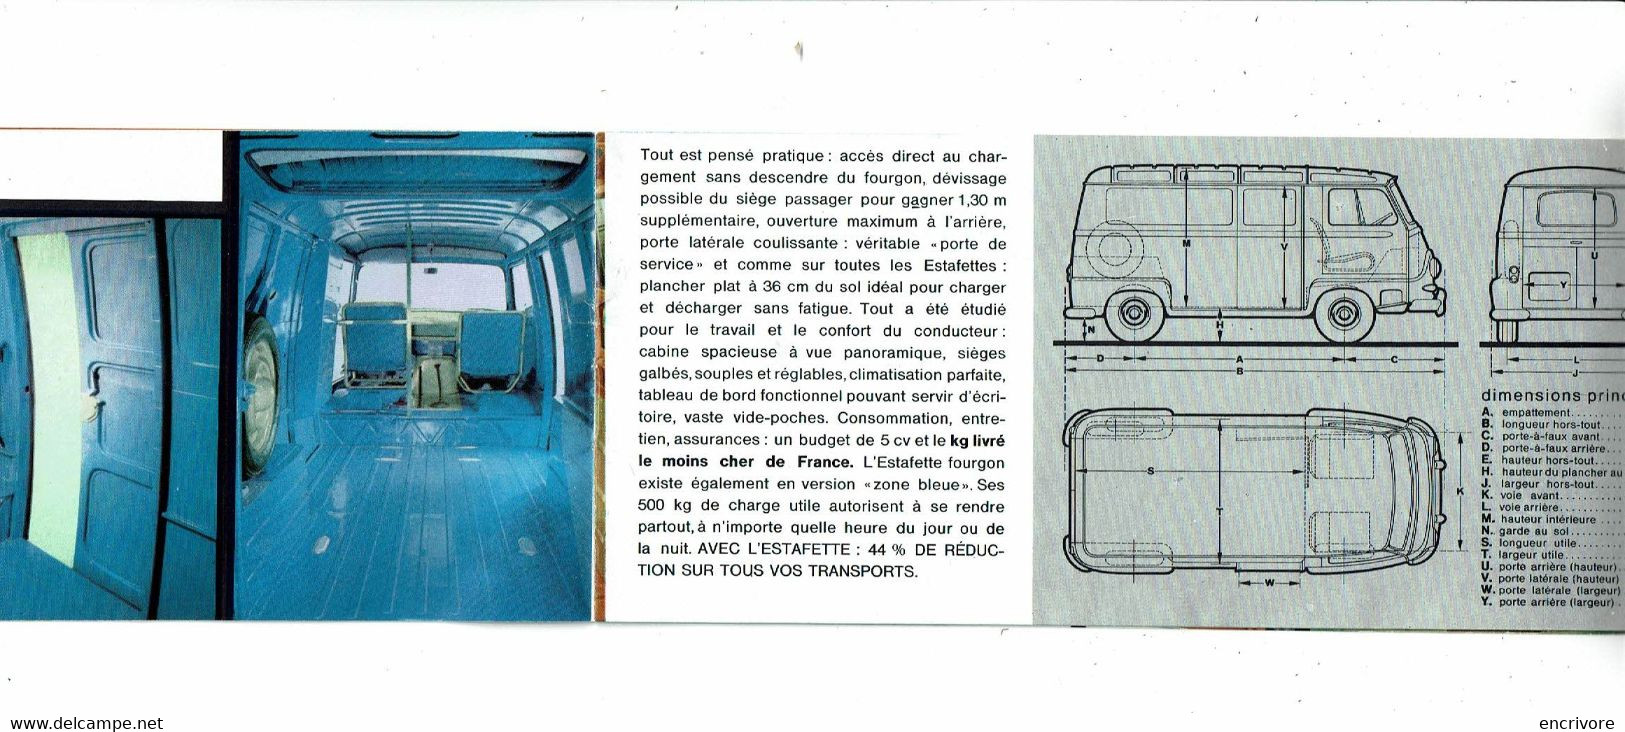 ESTAFETTE RENAULT Plaquette Publicitaire  TRES SYMPA Fourgonalouette Microcar - Automobile